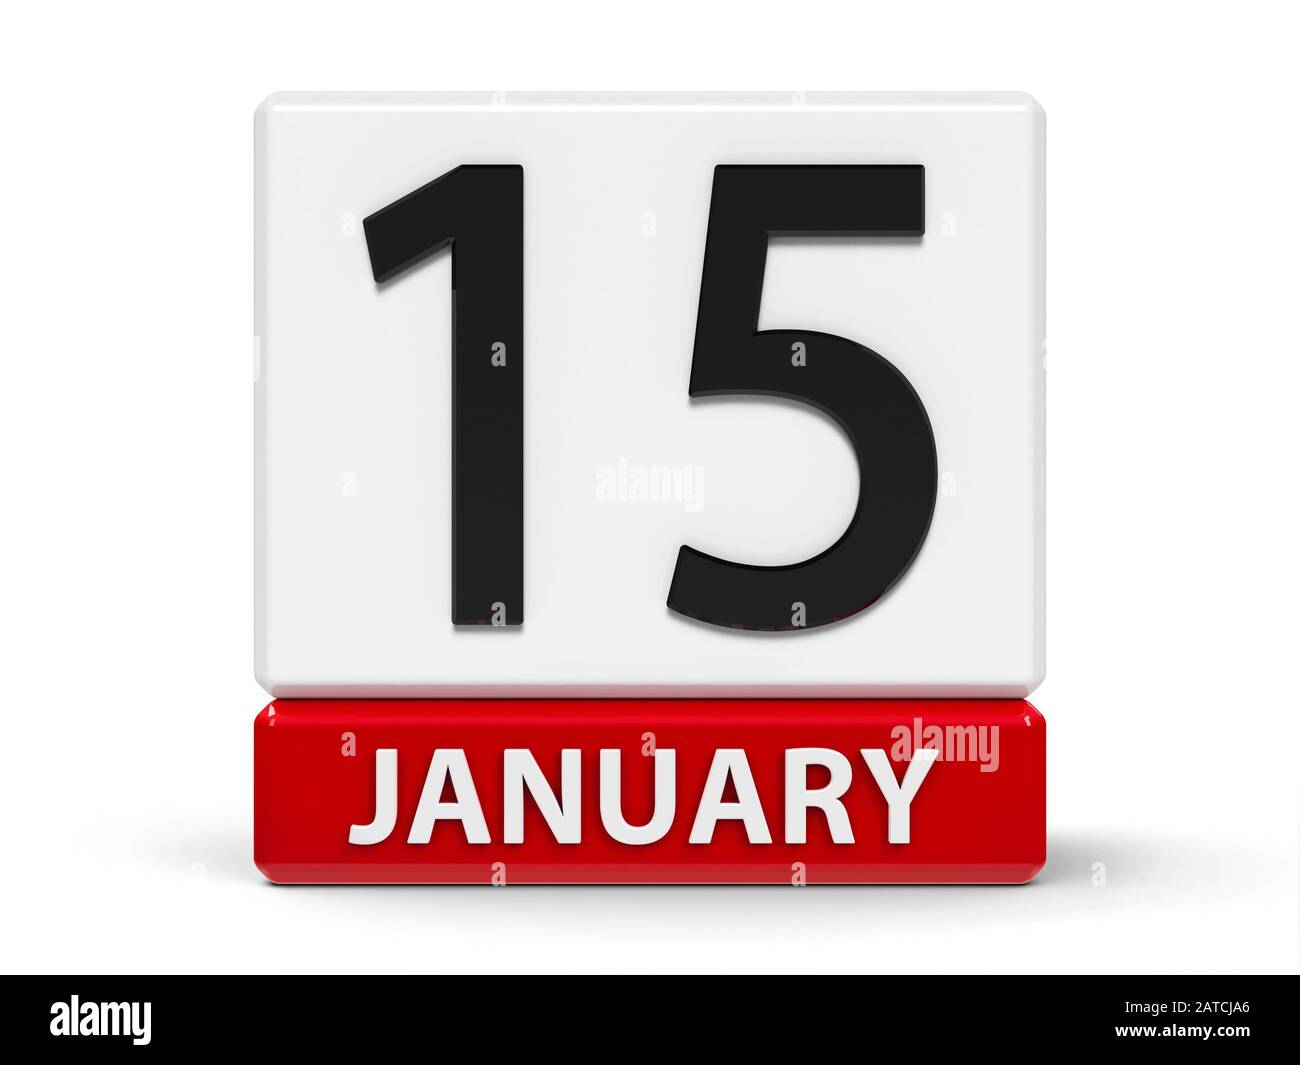 Rotes und weißes Kalendersymbol aus Würfeln - Der Fünfzehnte Januar - auf einem weißen Tisch, dreidimensionales Rendering, 3D-Abbildung Stockfoto